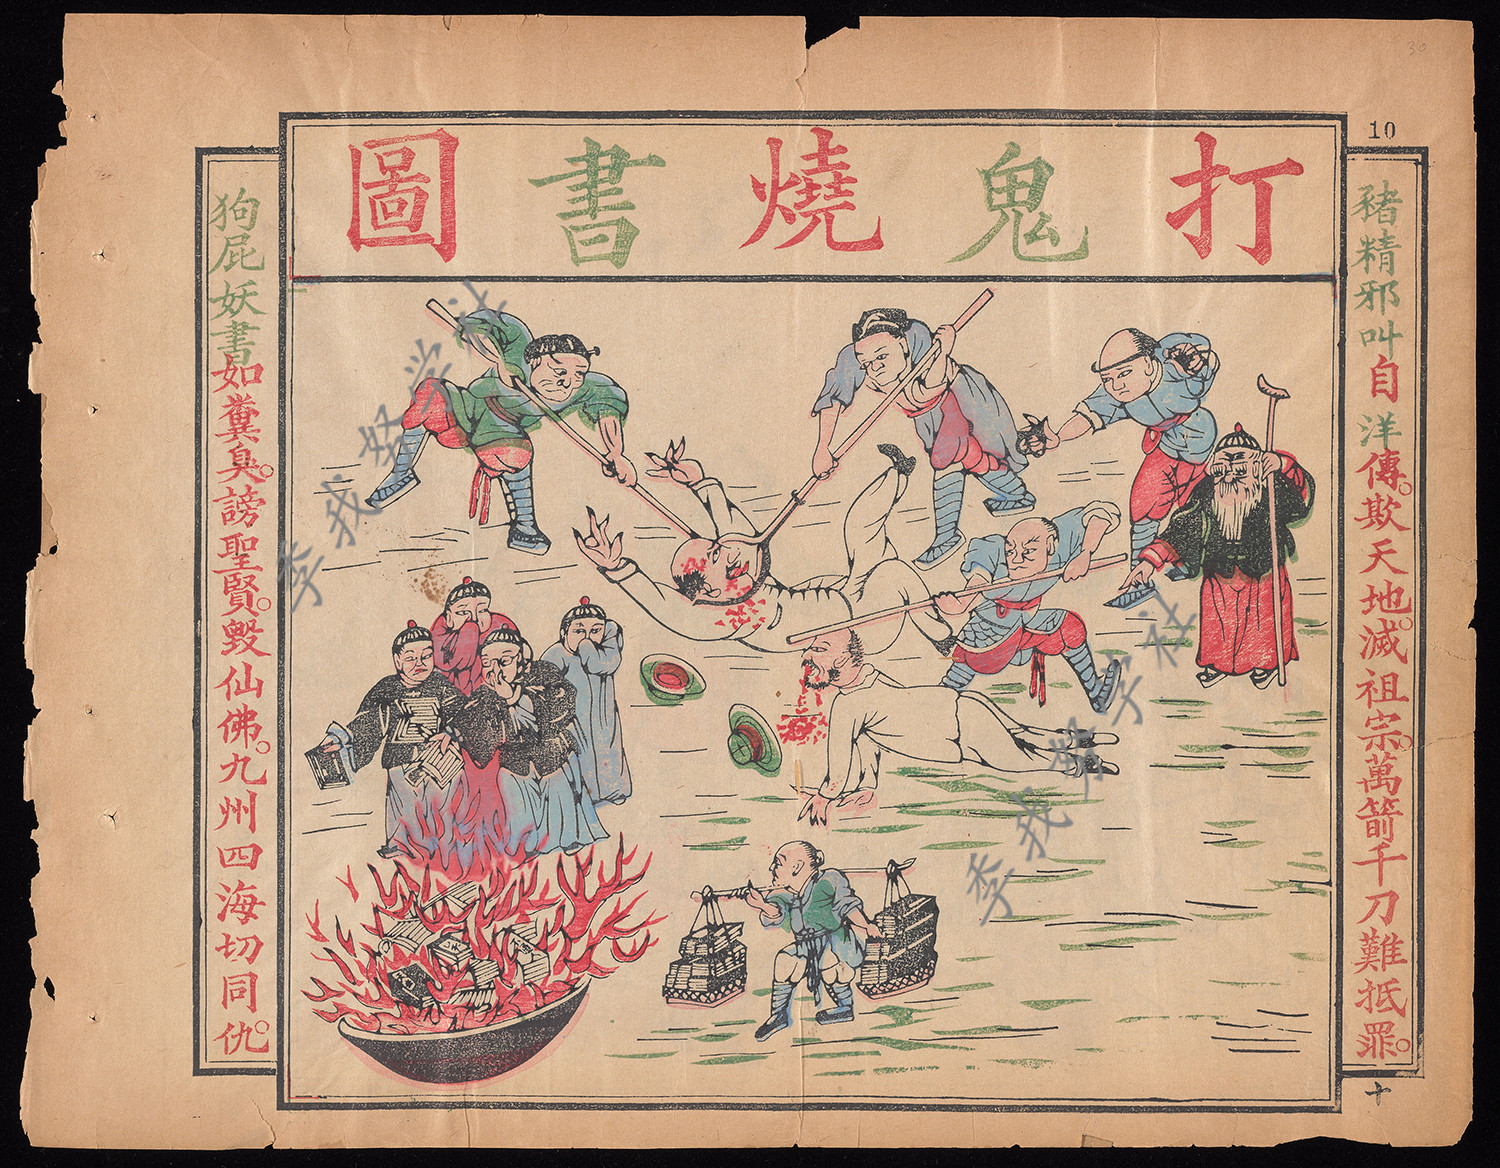 打鬼、烧鬼、治鬼：1891年在汉口出版的中国士绅反洋教彩印漫画